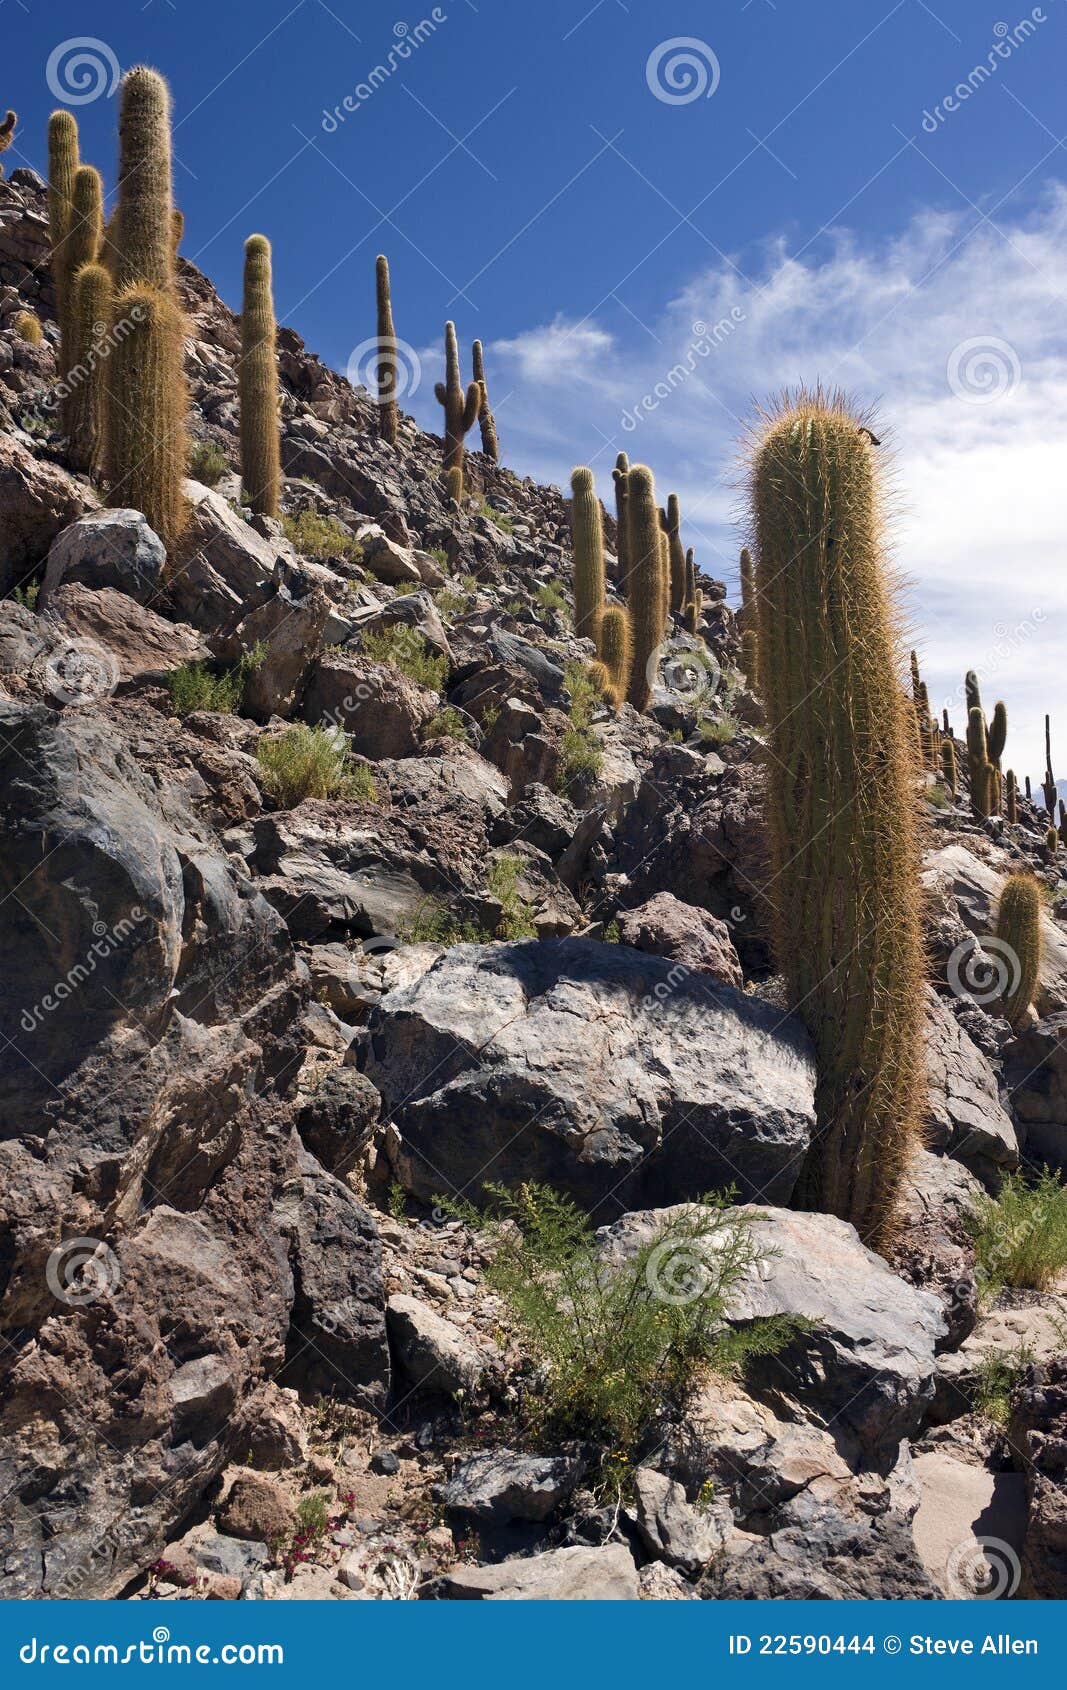 cactus canyon - san pedro de atacama - chile